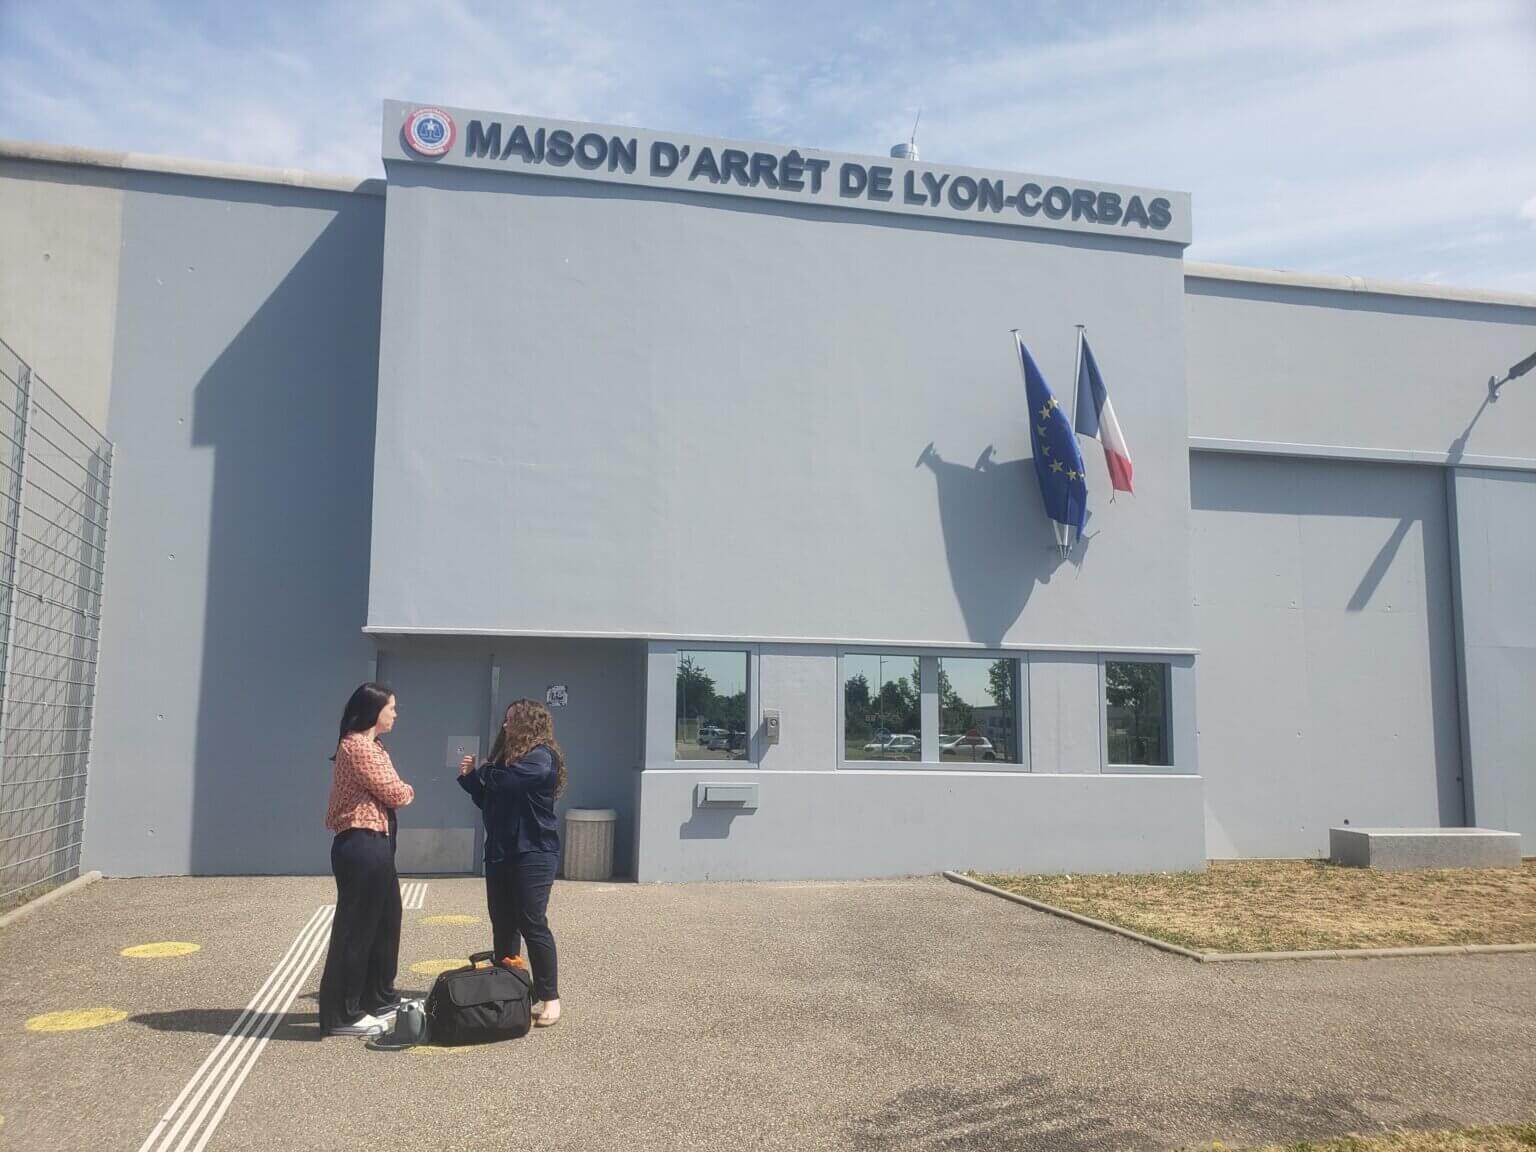 Législatives 2022 : un « cycle citoyenneté » à la prison de Lyon-Corbas